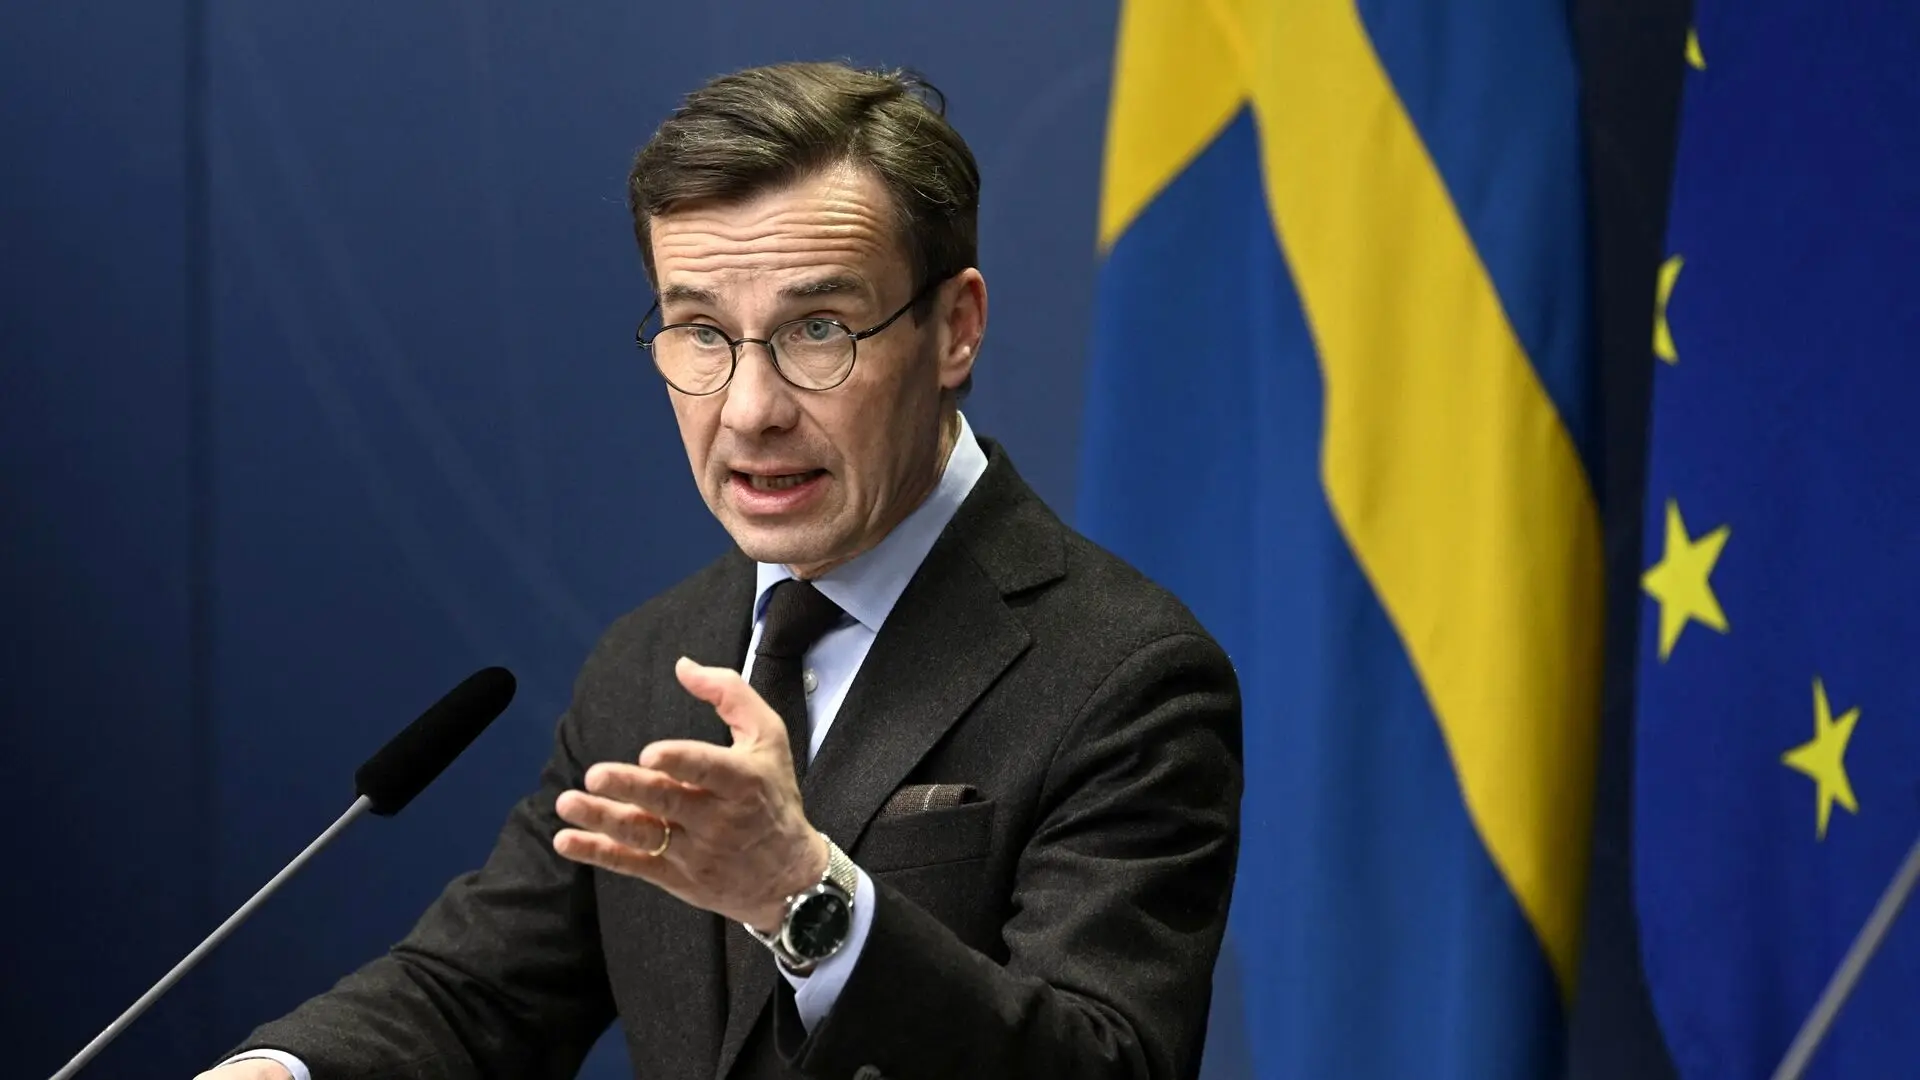 نخست وزیر سوئد:  قوانین آزادی بیان سوئد هیچ تغییری نمی کند